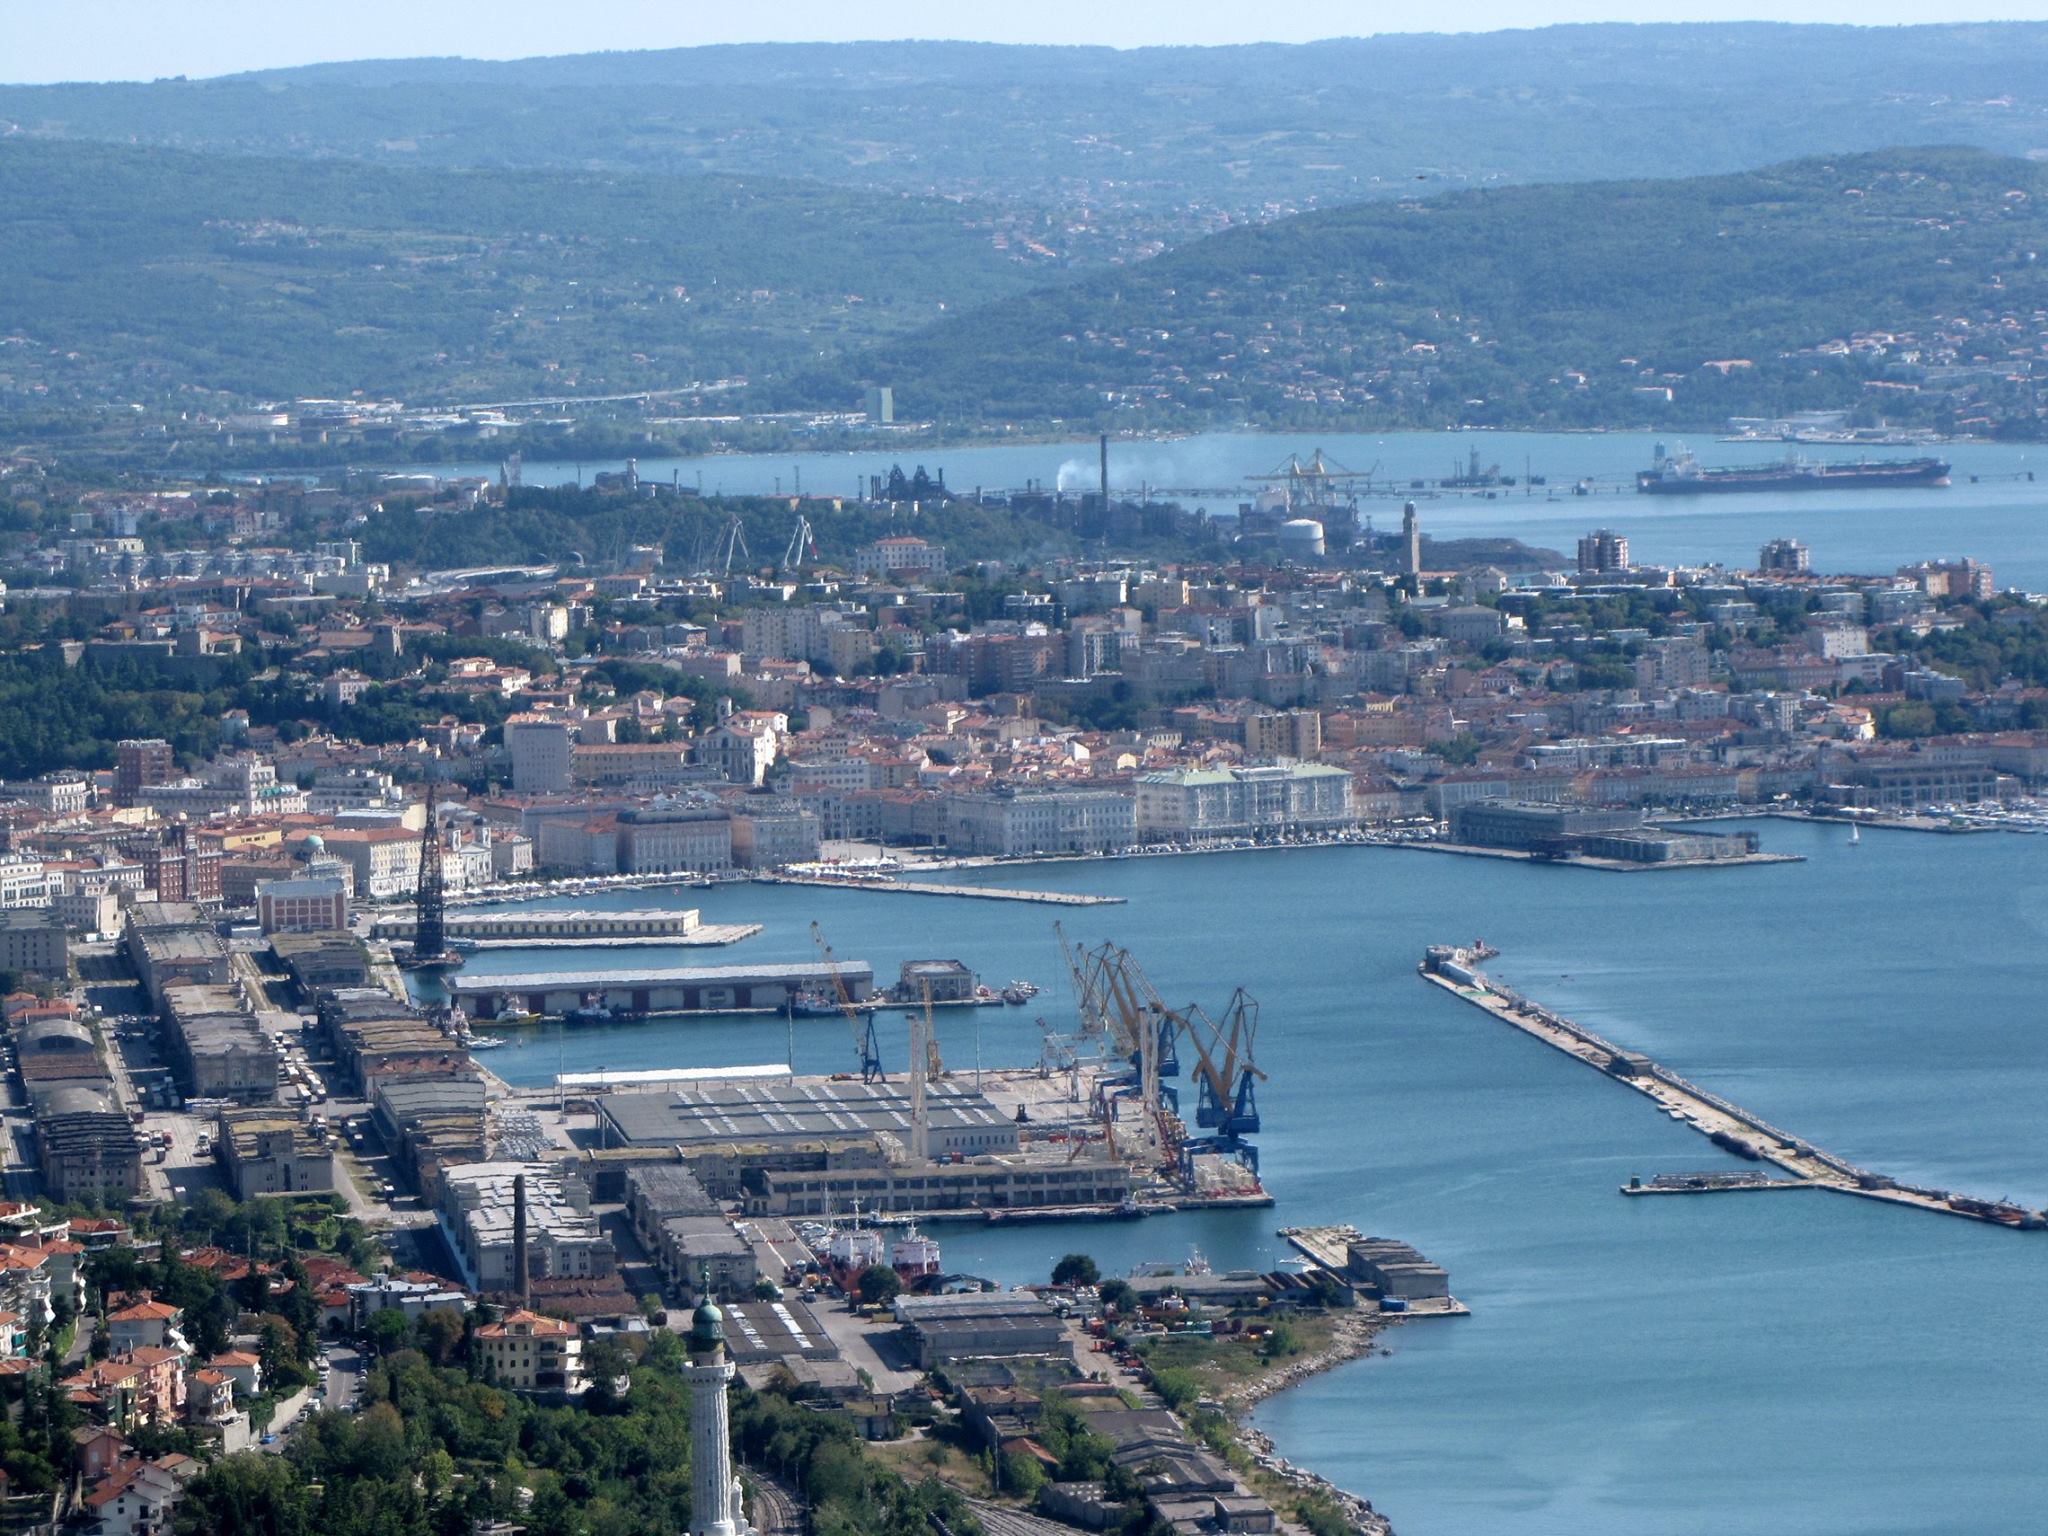 Il Porto Franco Nord, settore strategico del Porto Franco internazionale del Territorio Libero di Trieste.